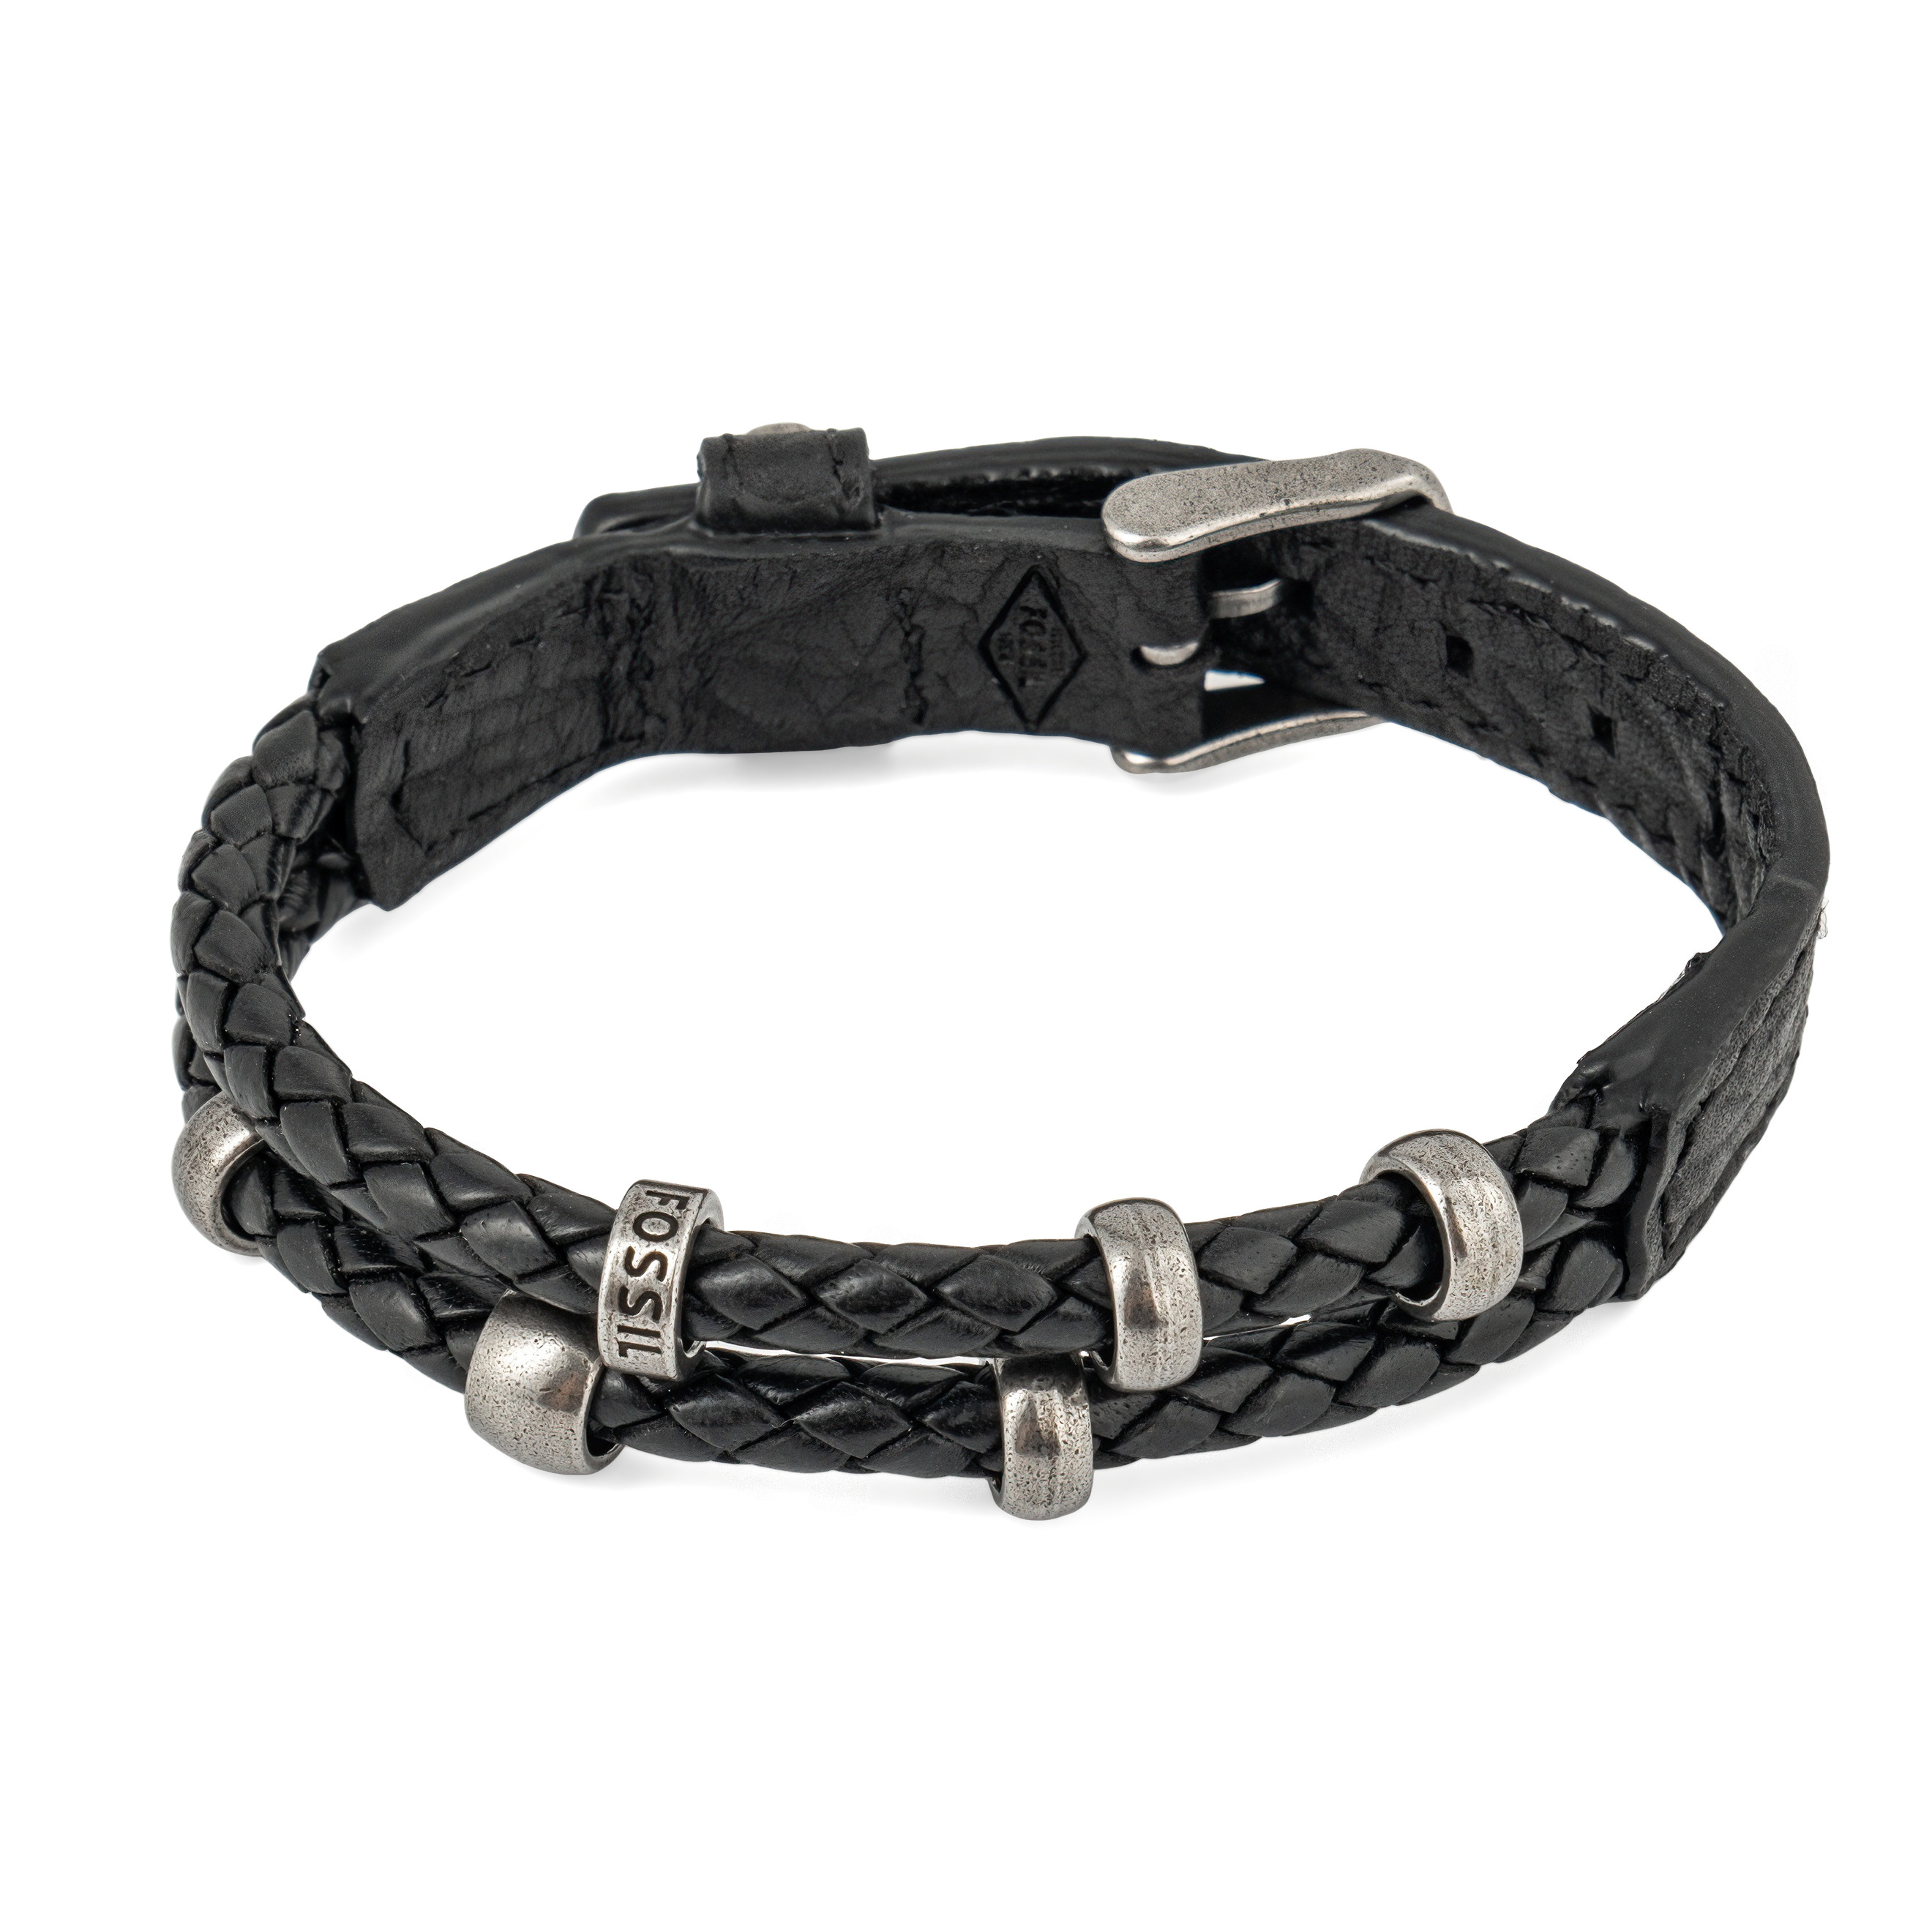 Двойной кожаный черный браслет-ремешок – купить в интернет-магазине PoisonDrop, артикул 46455.